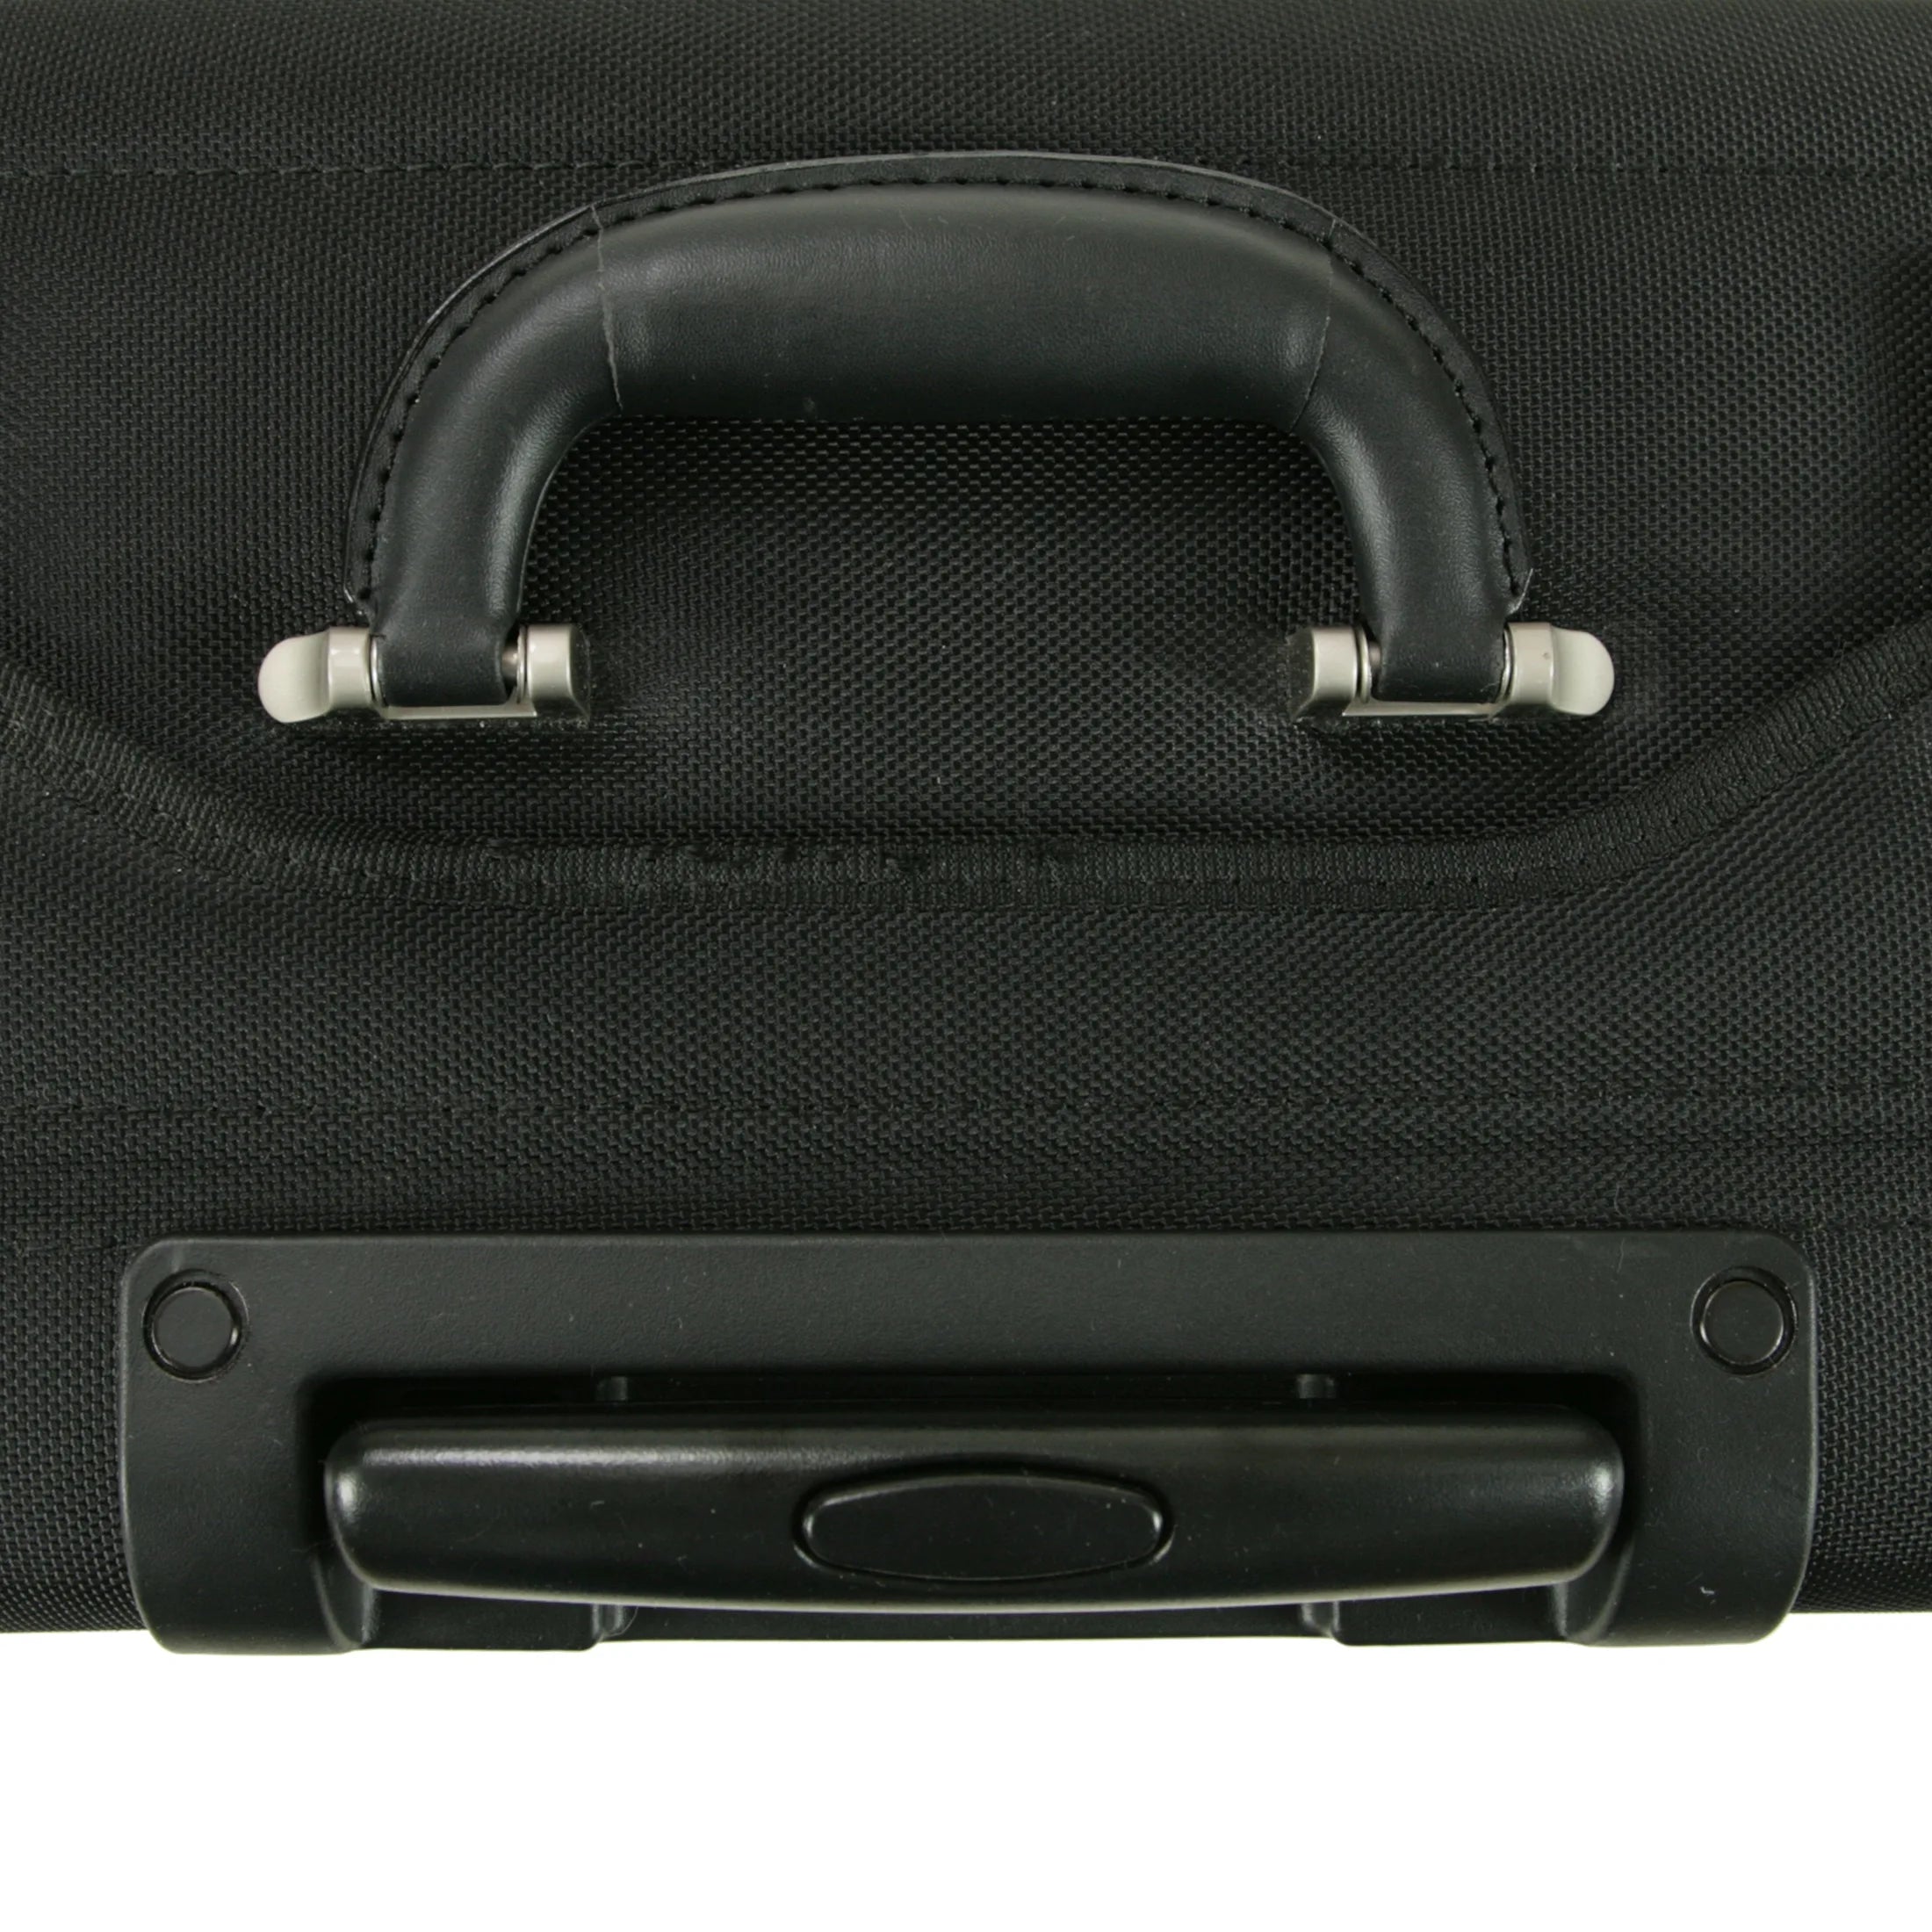 Dermata business pilot suitcase on wheels 47 cm - black